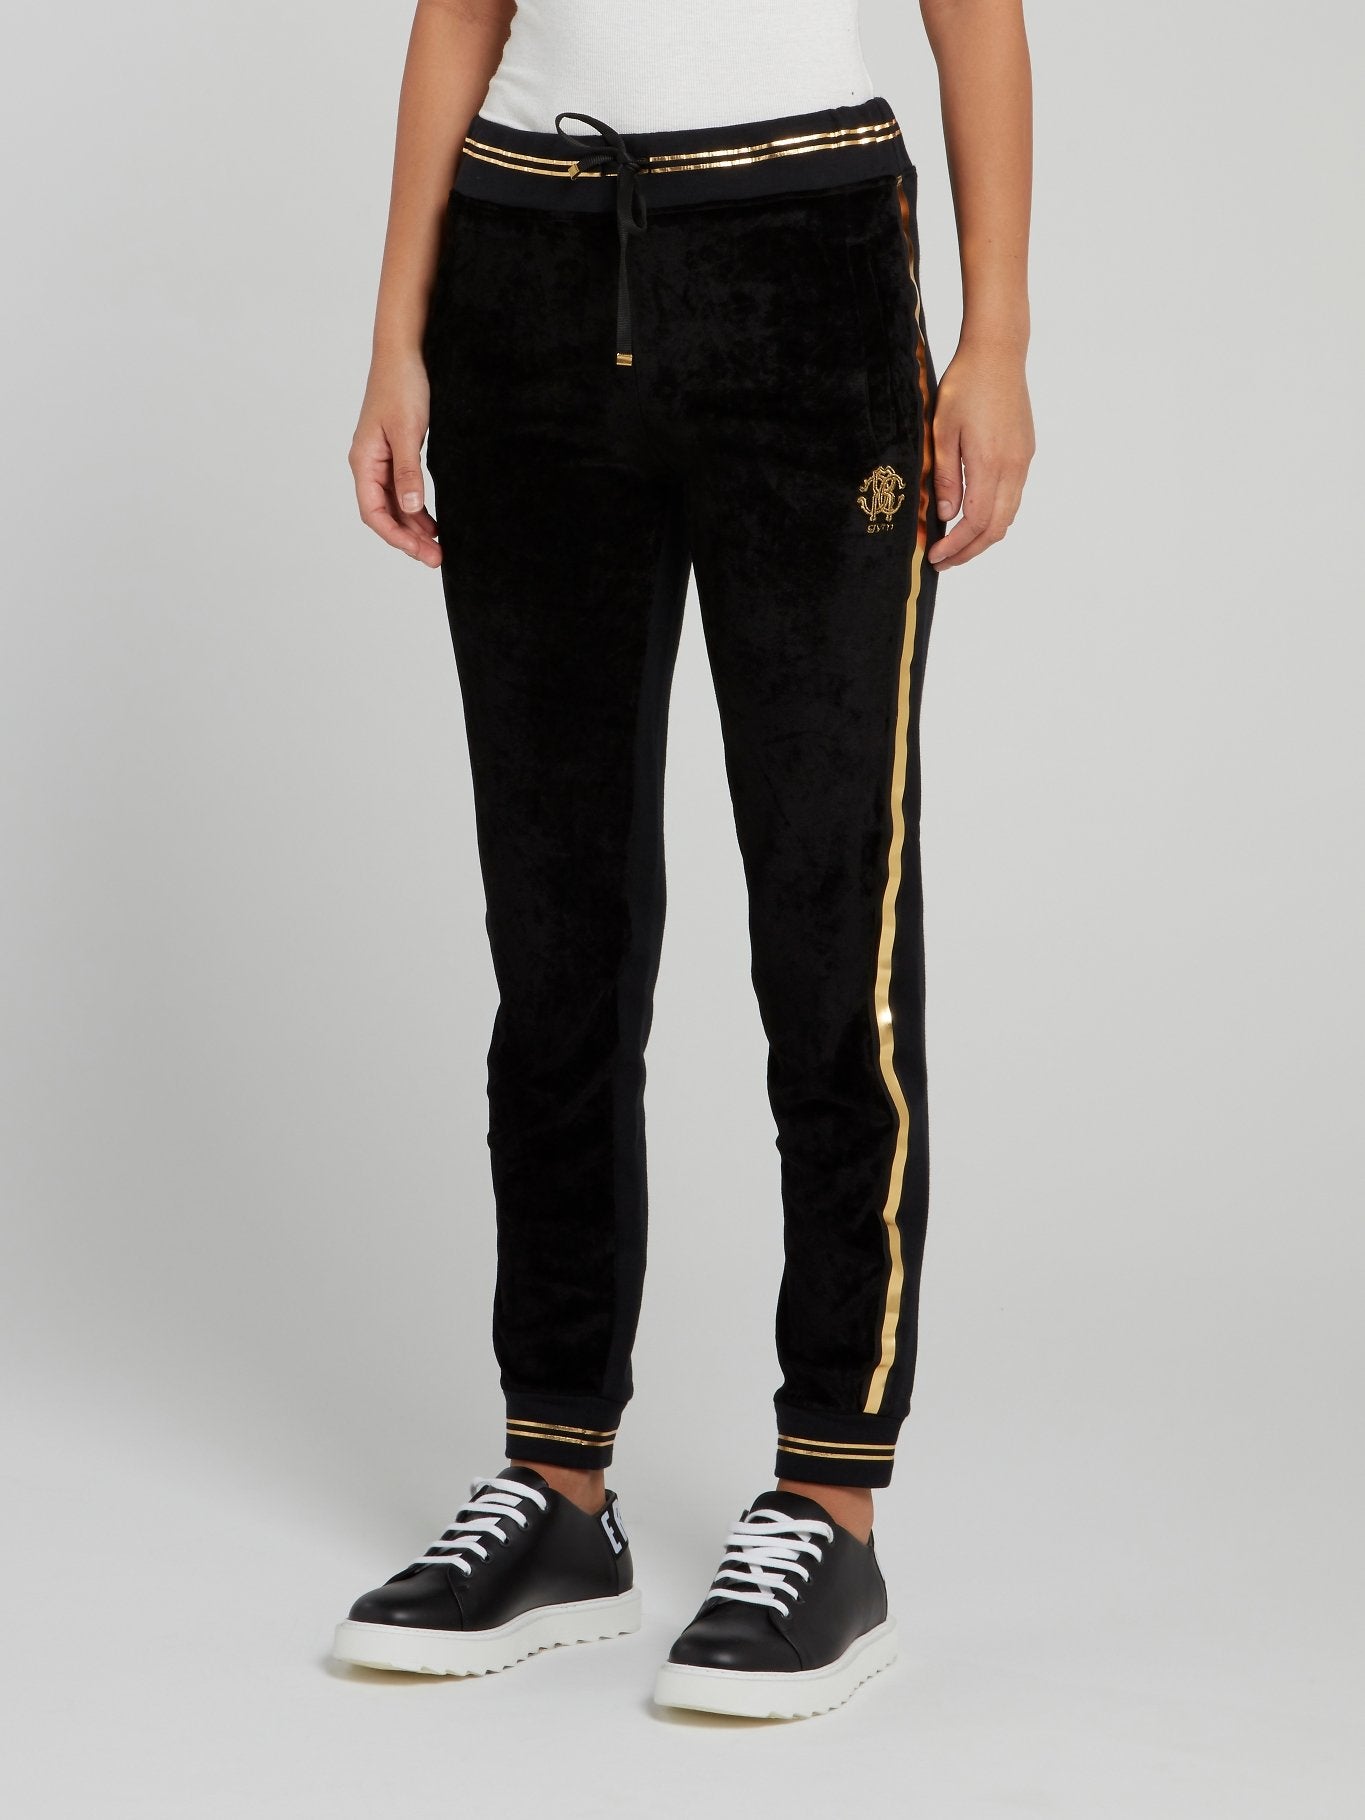 Черные спортивные брюки с золотой полоской